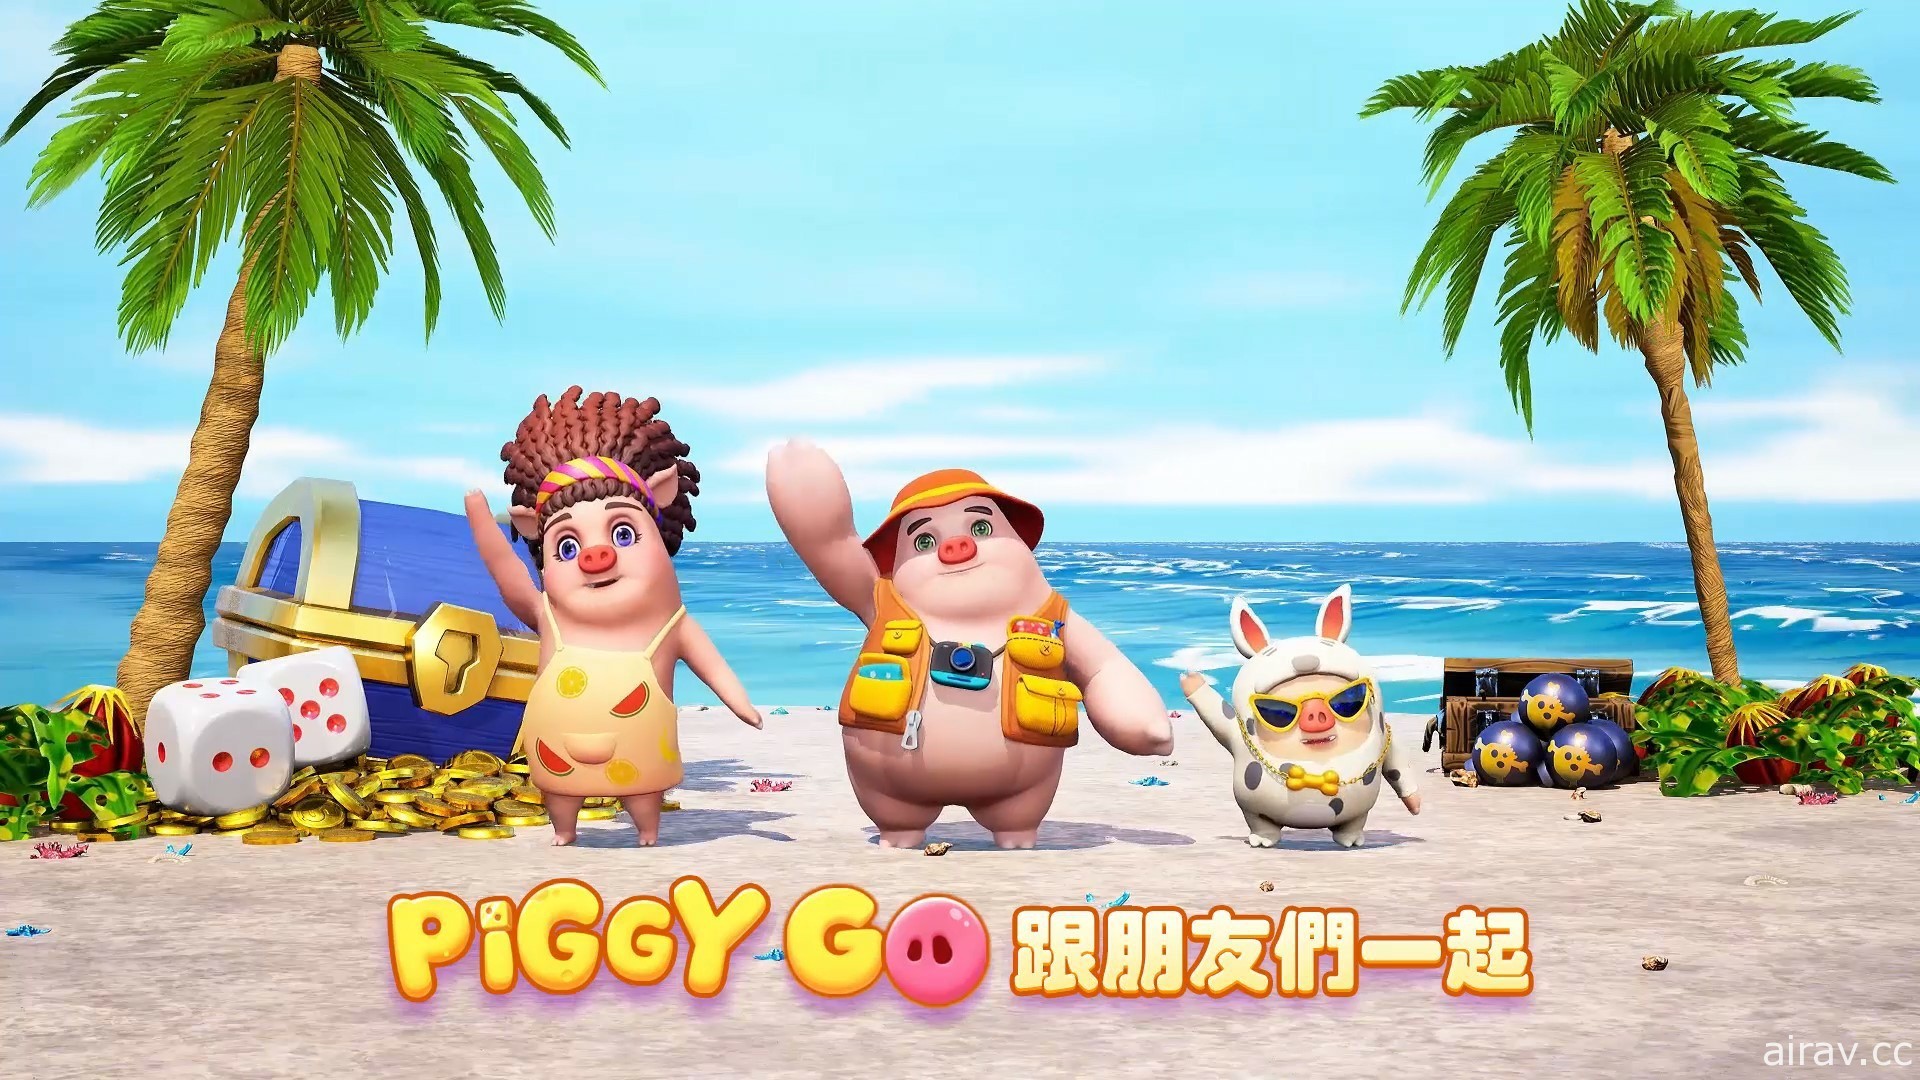 《Piggy Go 豬遊記》釋出宣傳影片 同步公開遊戲代言人